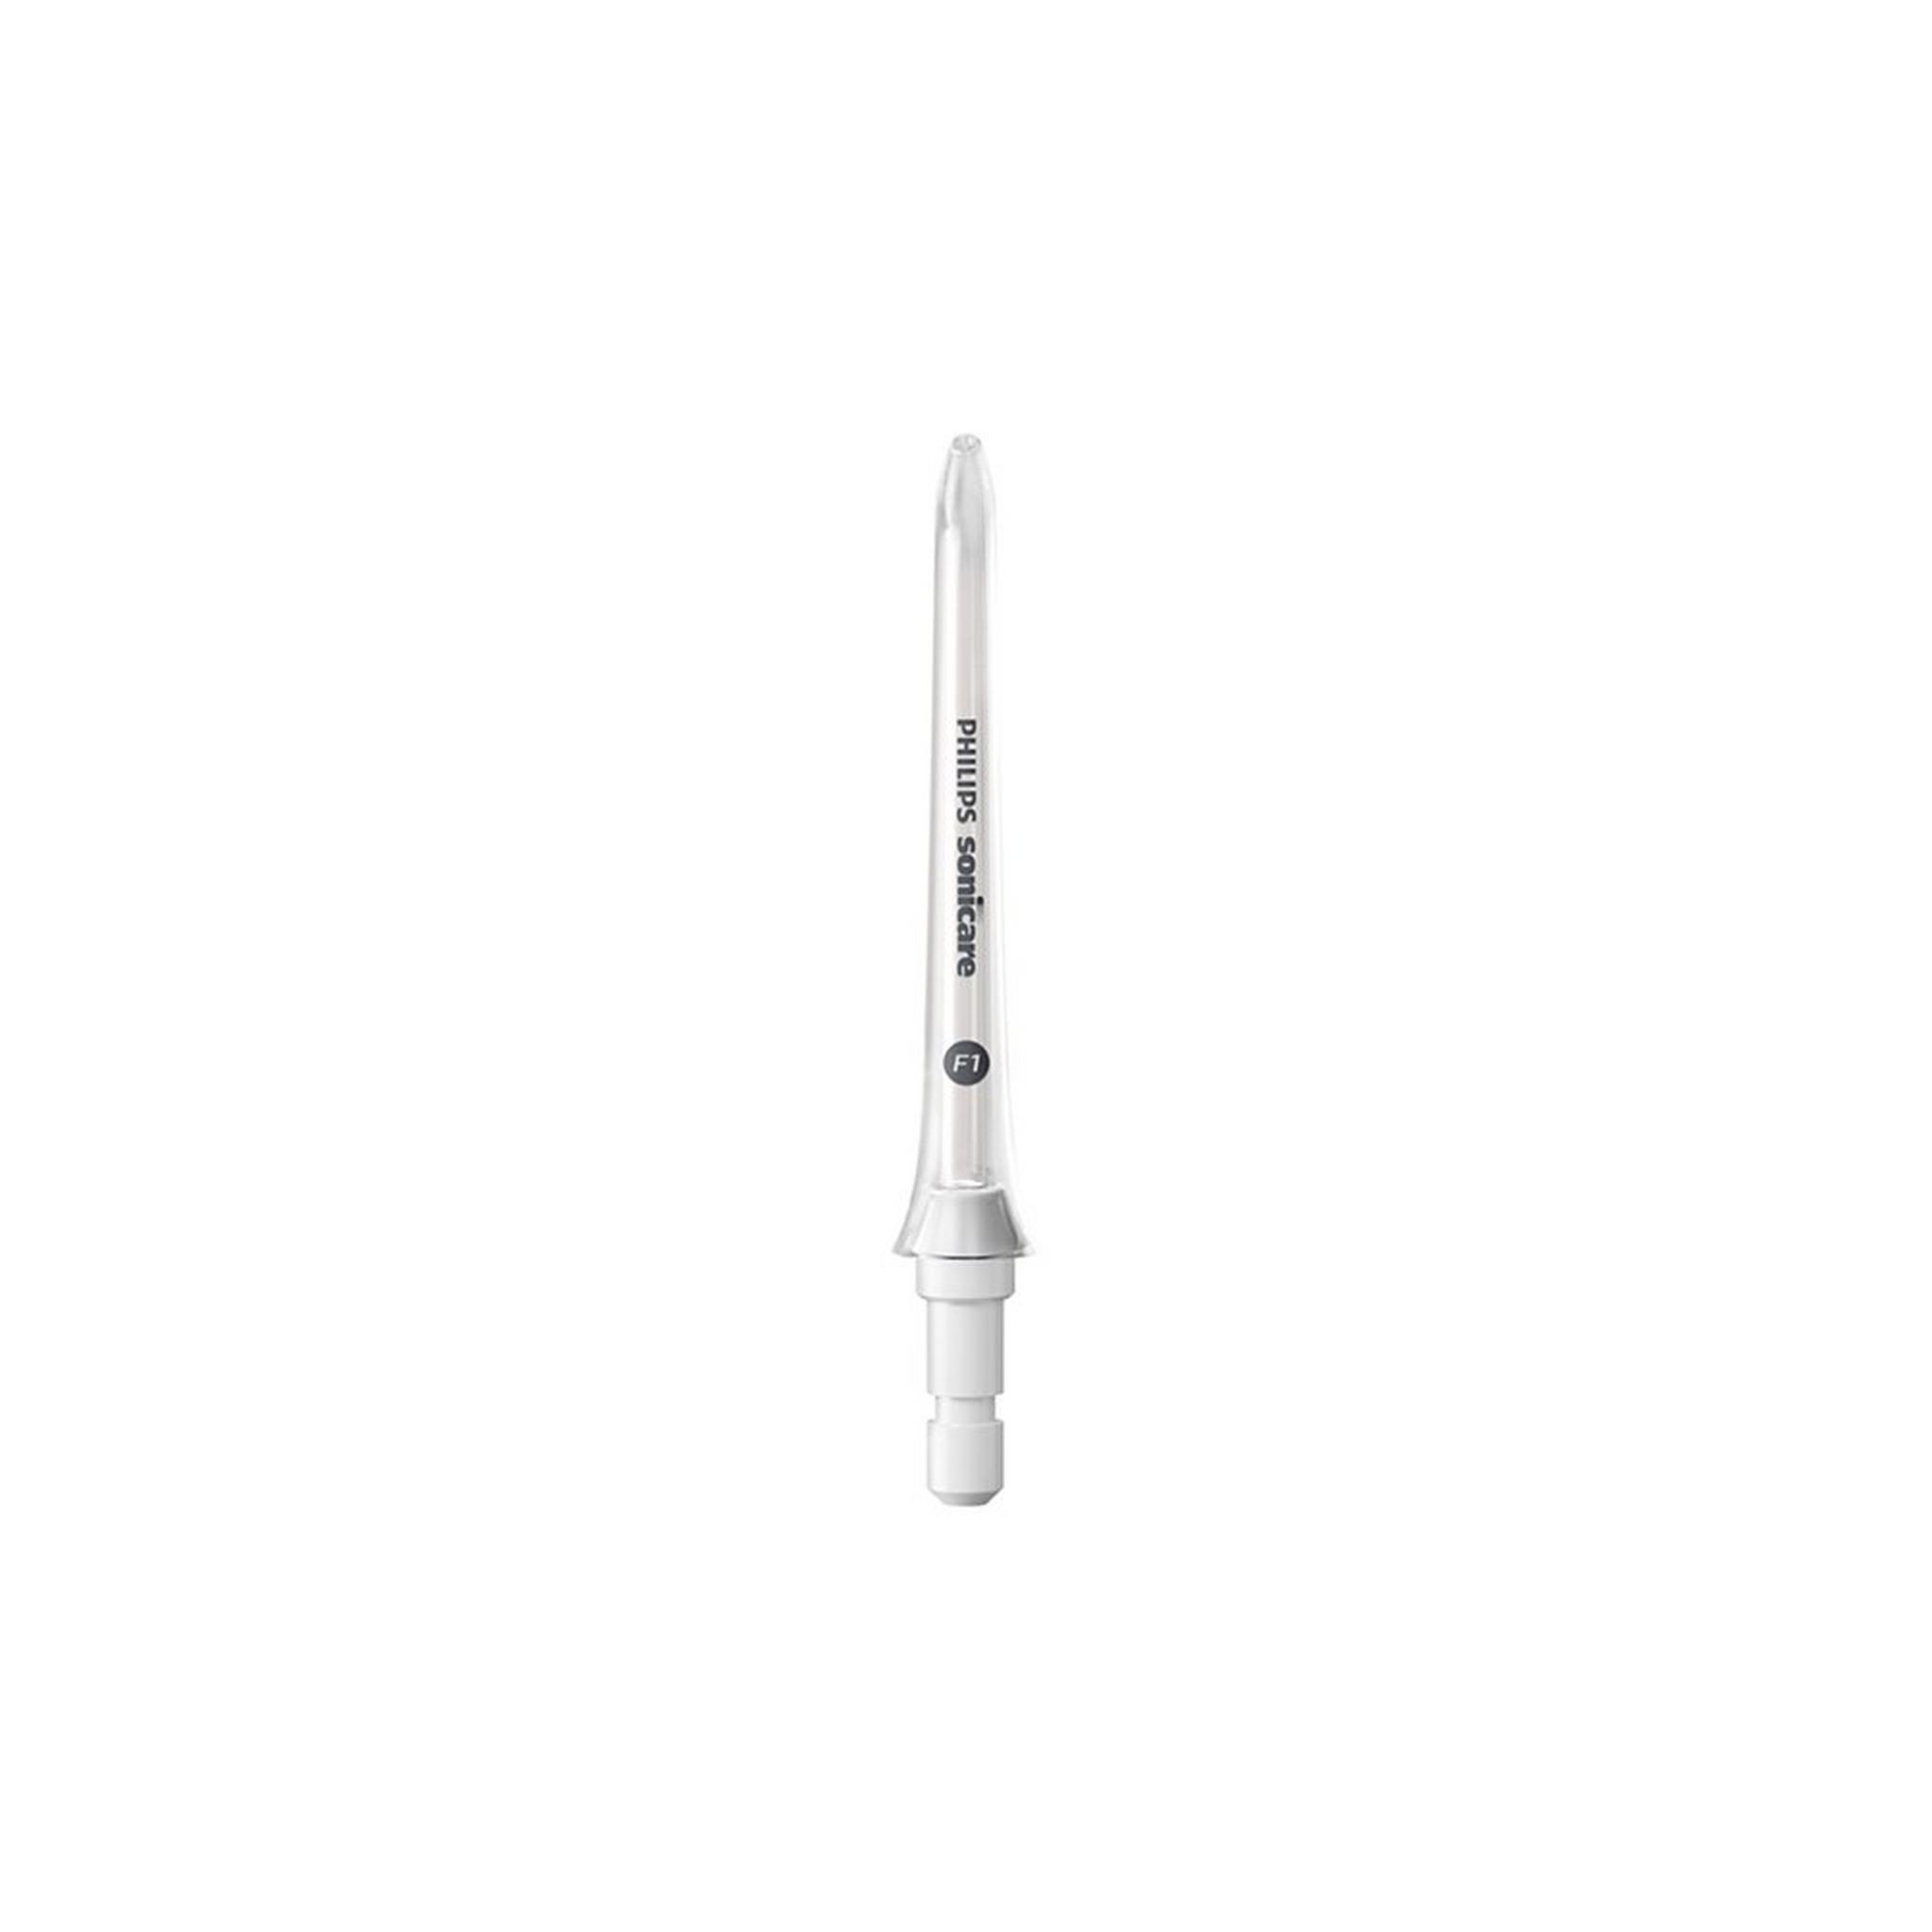 فوهة جهاز غسل الفم من فيليبس، فوهتان، HX3042 / 00 - أبيض